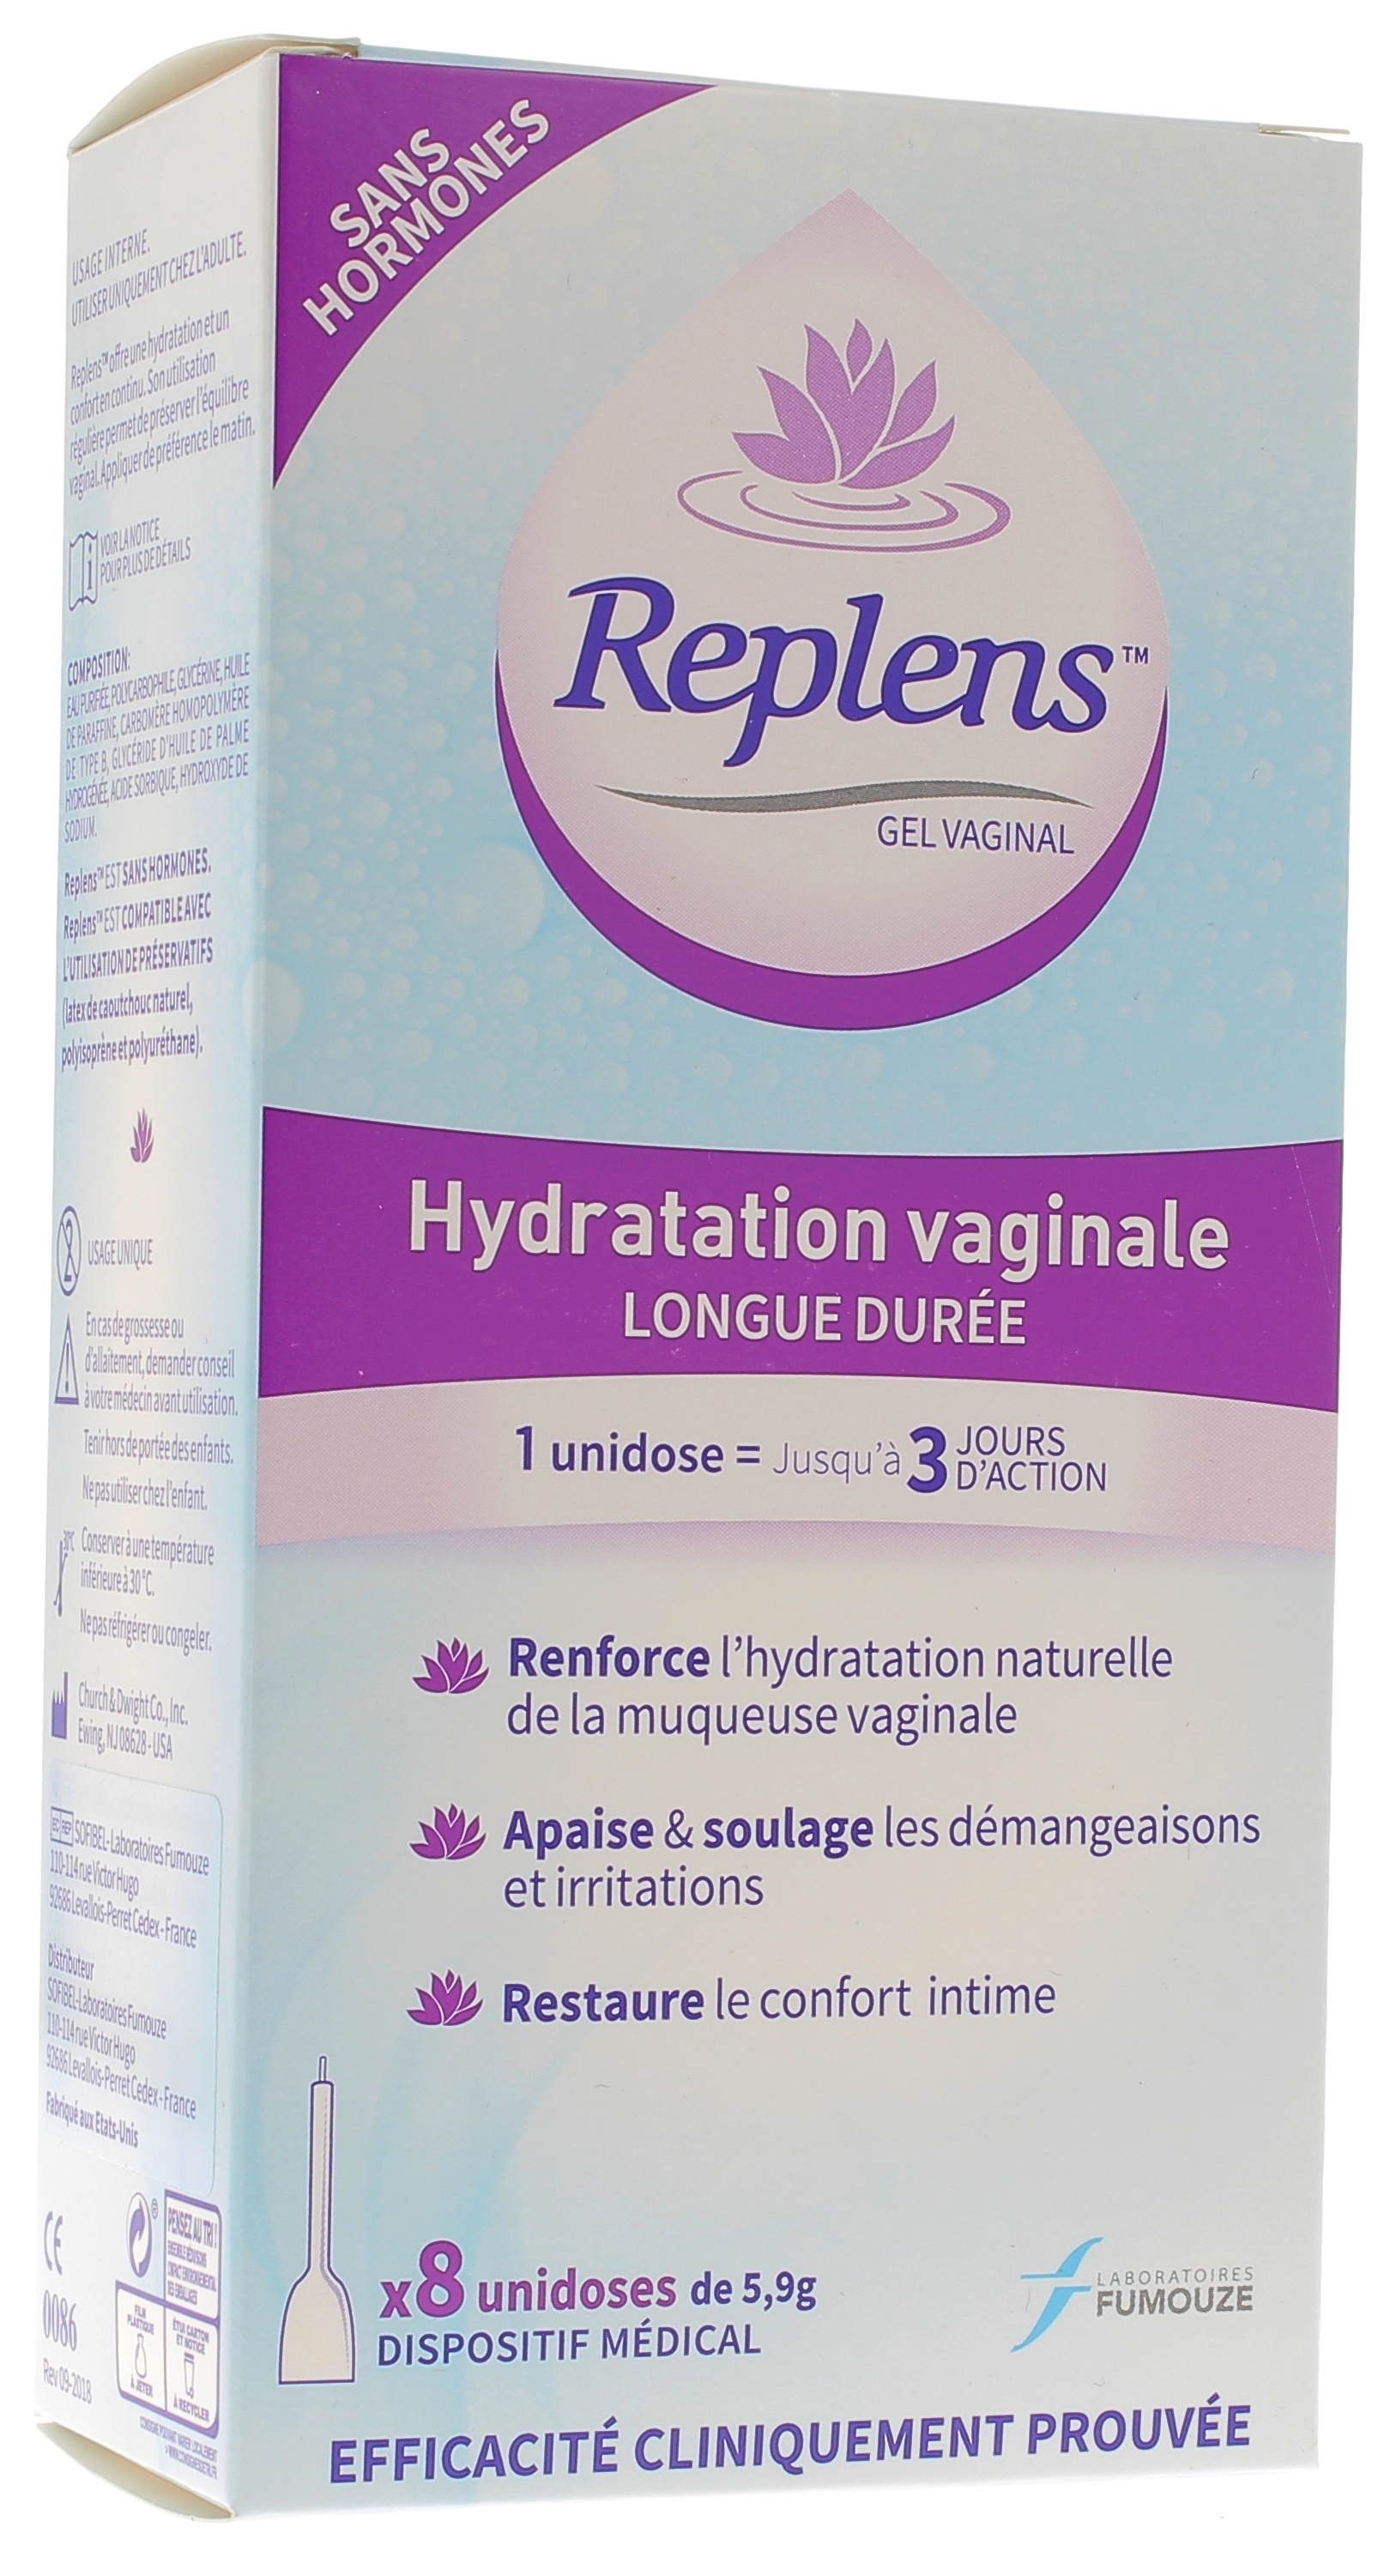 Replens Gel Vaginal : hydratation vaginale longue durée